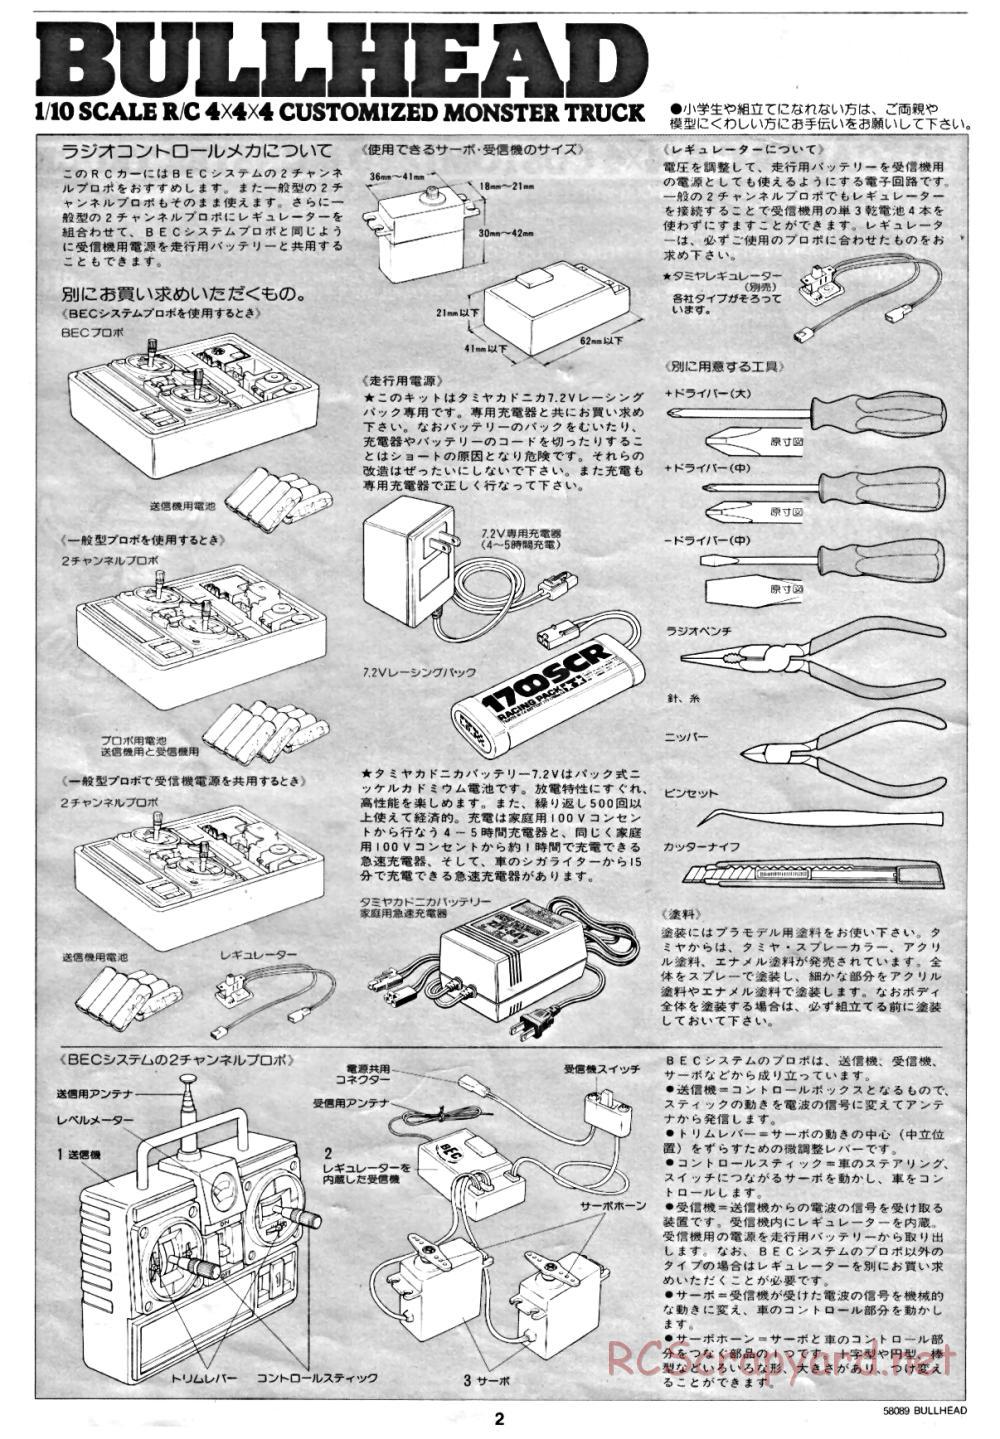 Tamiya - Bullhead - 58089 - Manual - Page 2